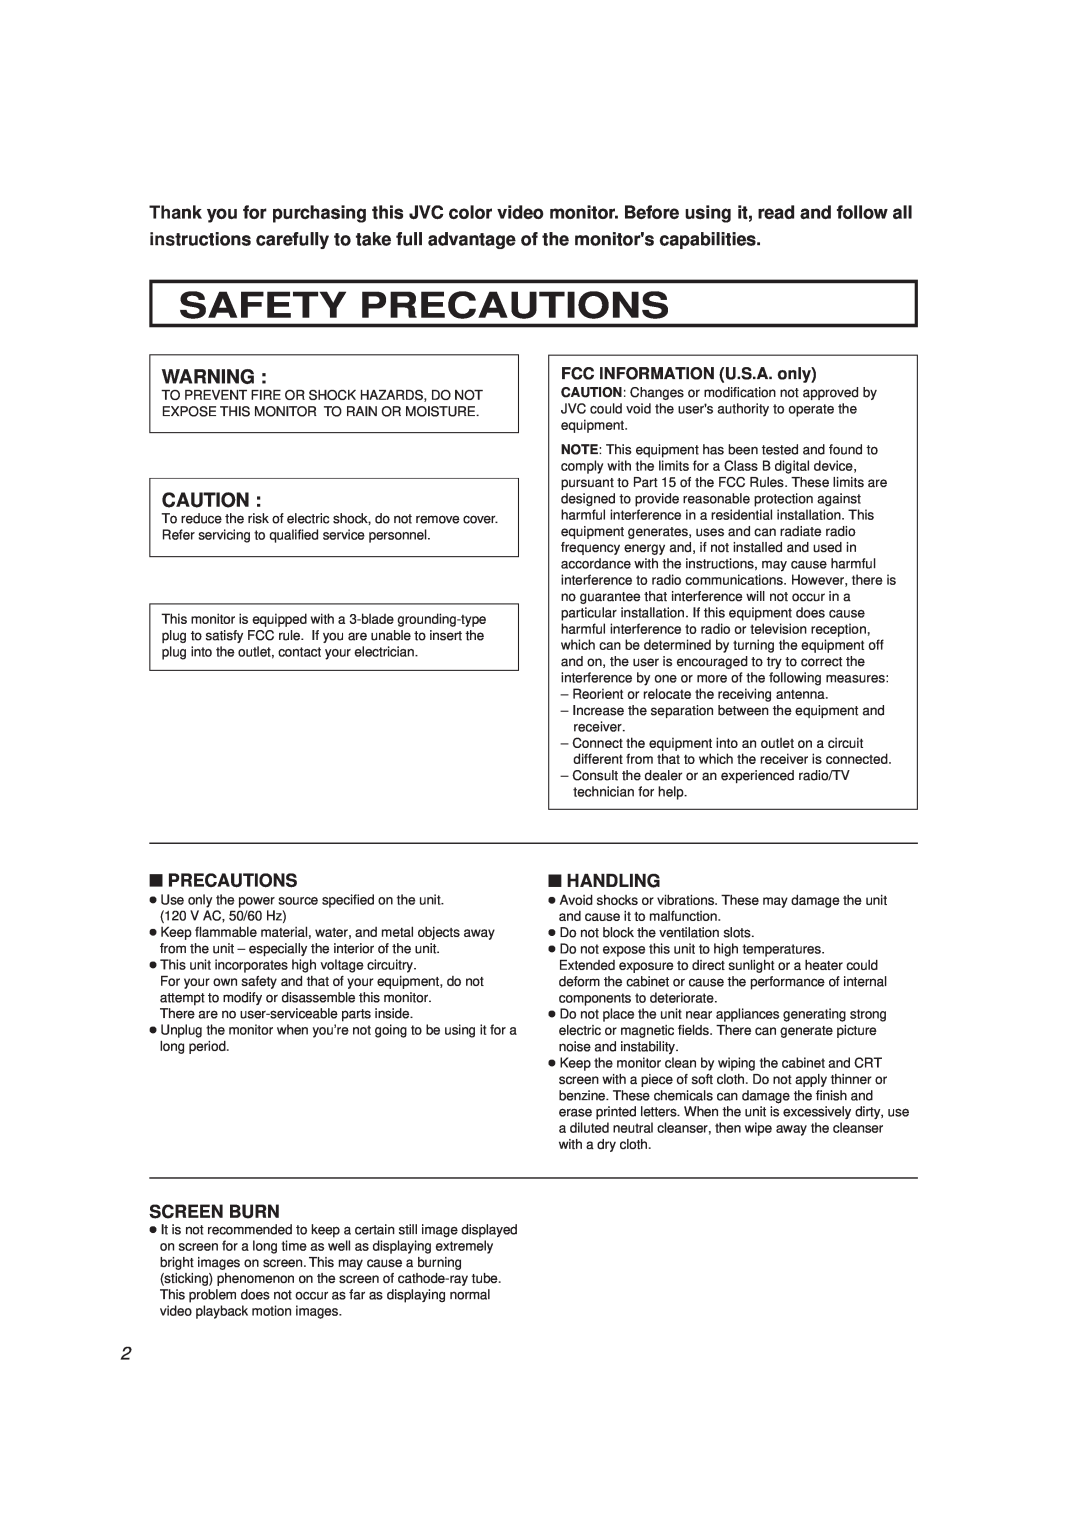 JVC TM-2000SU, TM-1600SU manual Safety Precautions, Handling, Screen Burn, FCC INFORMATION U.S.A. only 